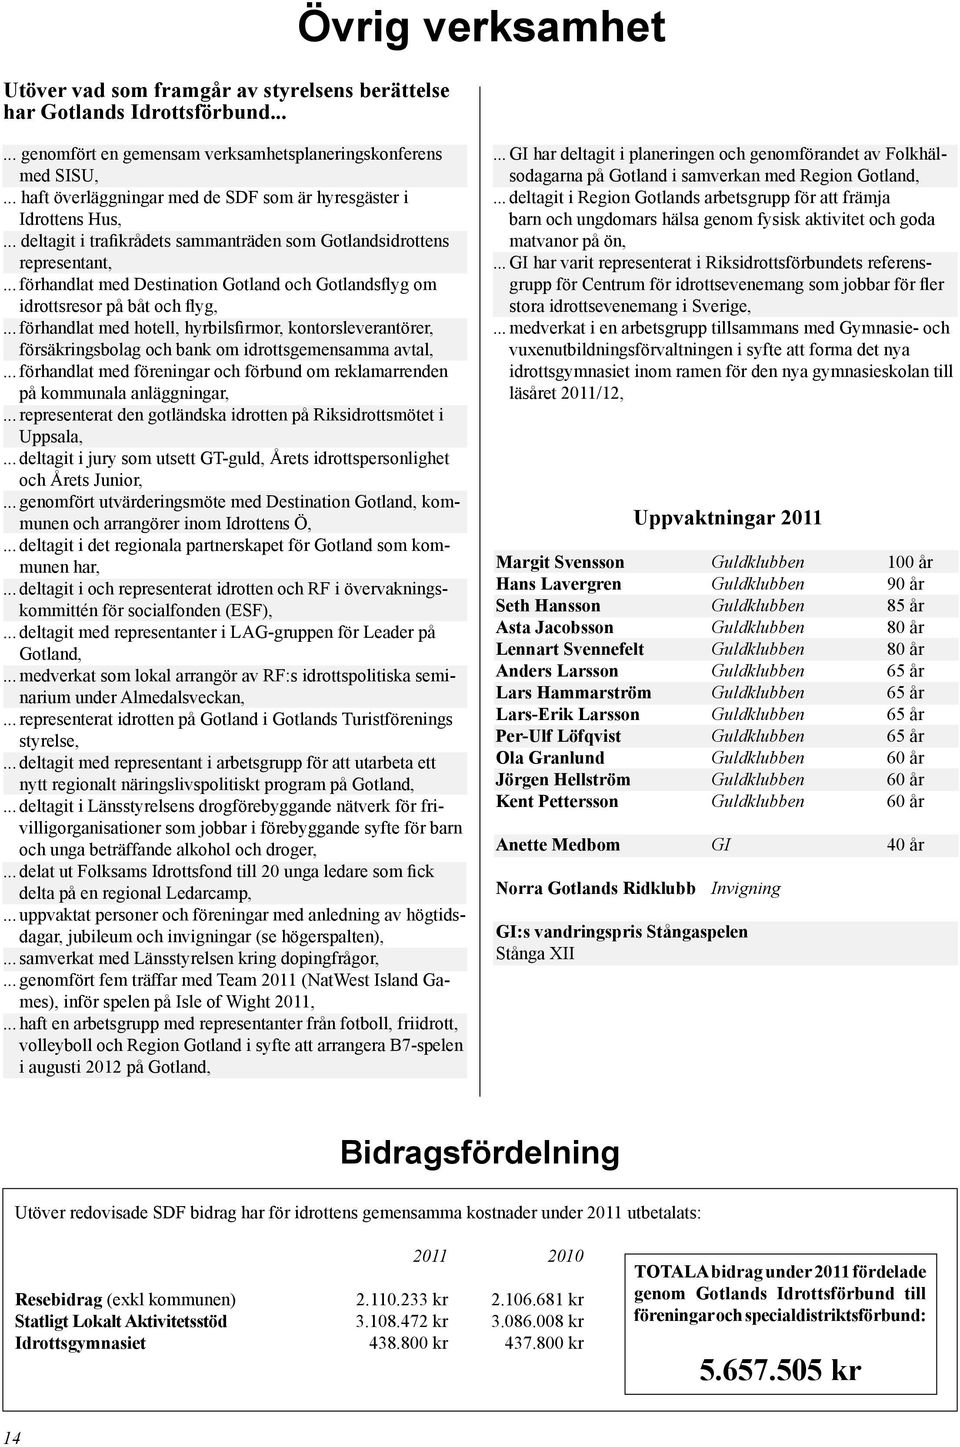 .. förhandlat med Destination Gotland och Gotlandsflyg om idrottsresor på båt och flyg,.